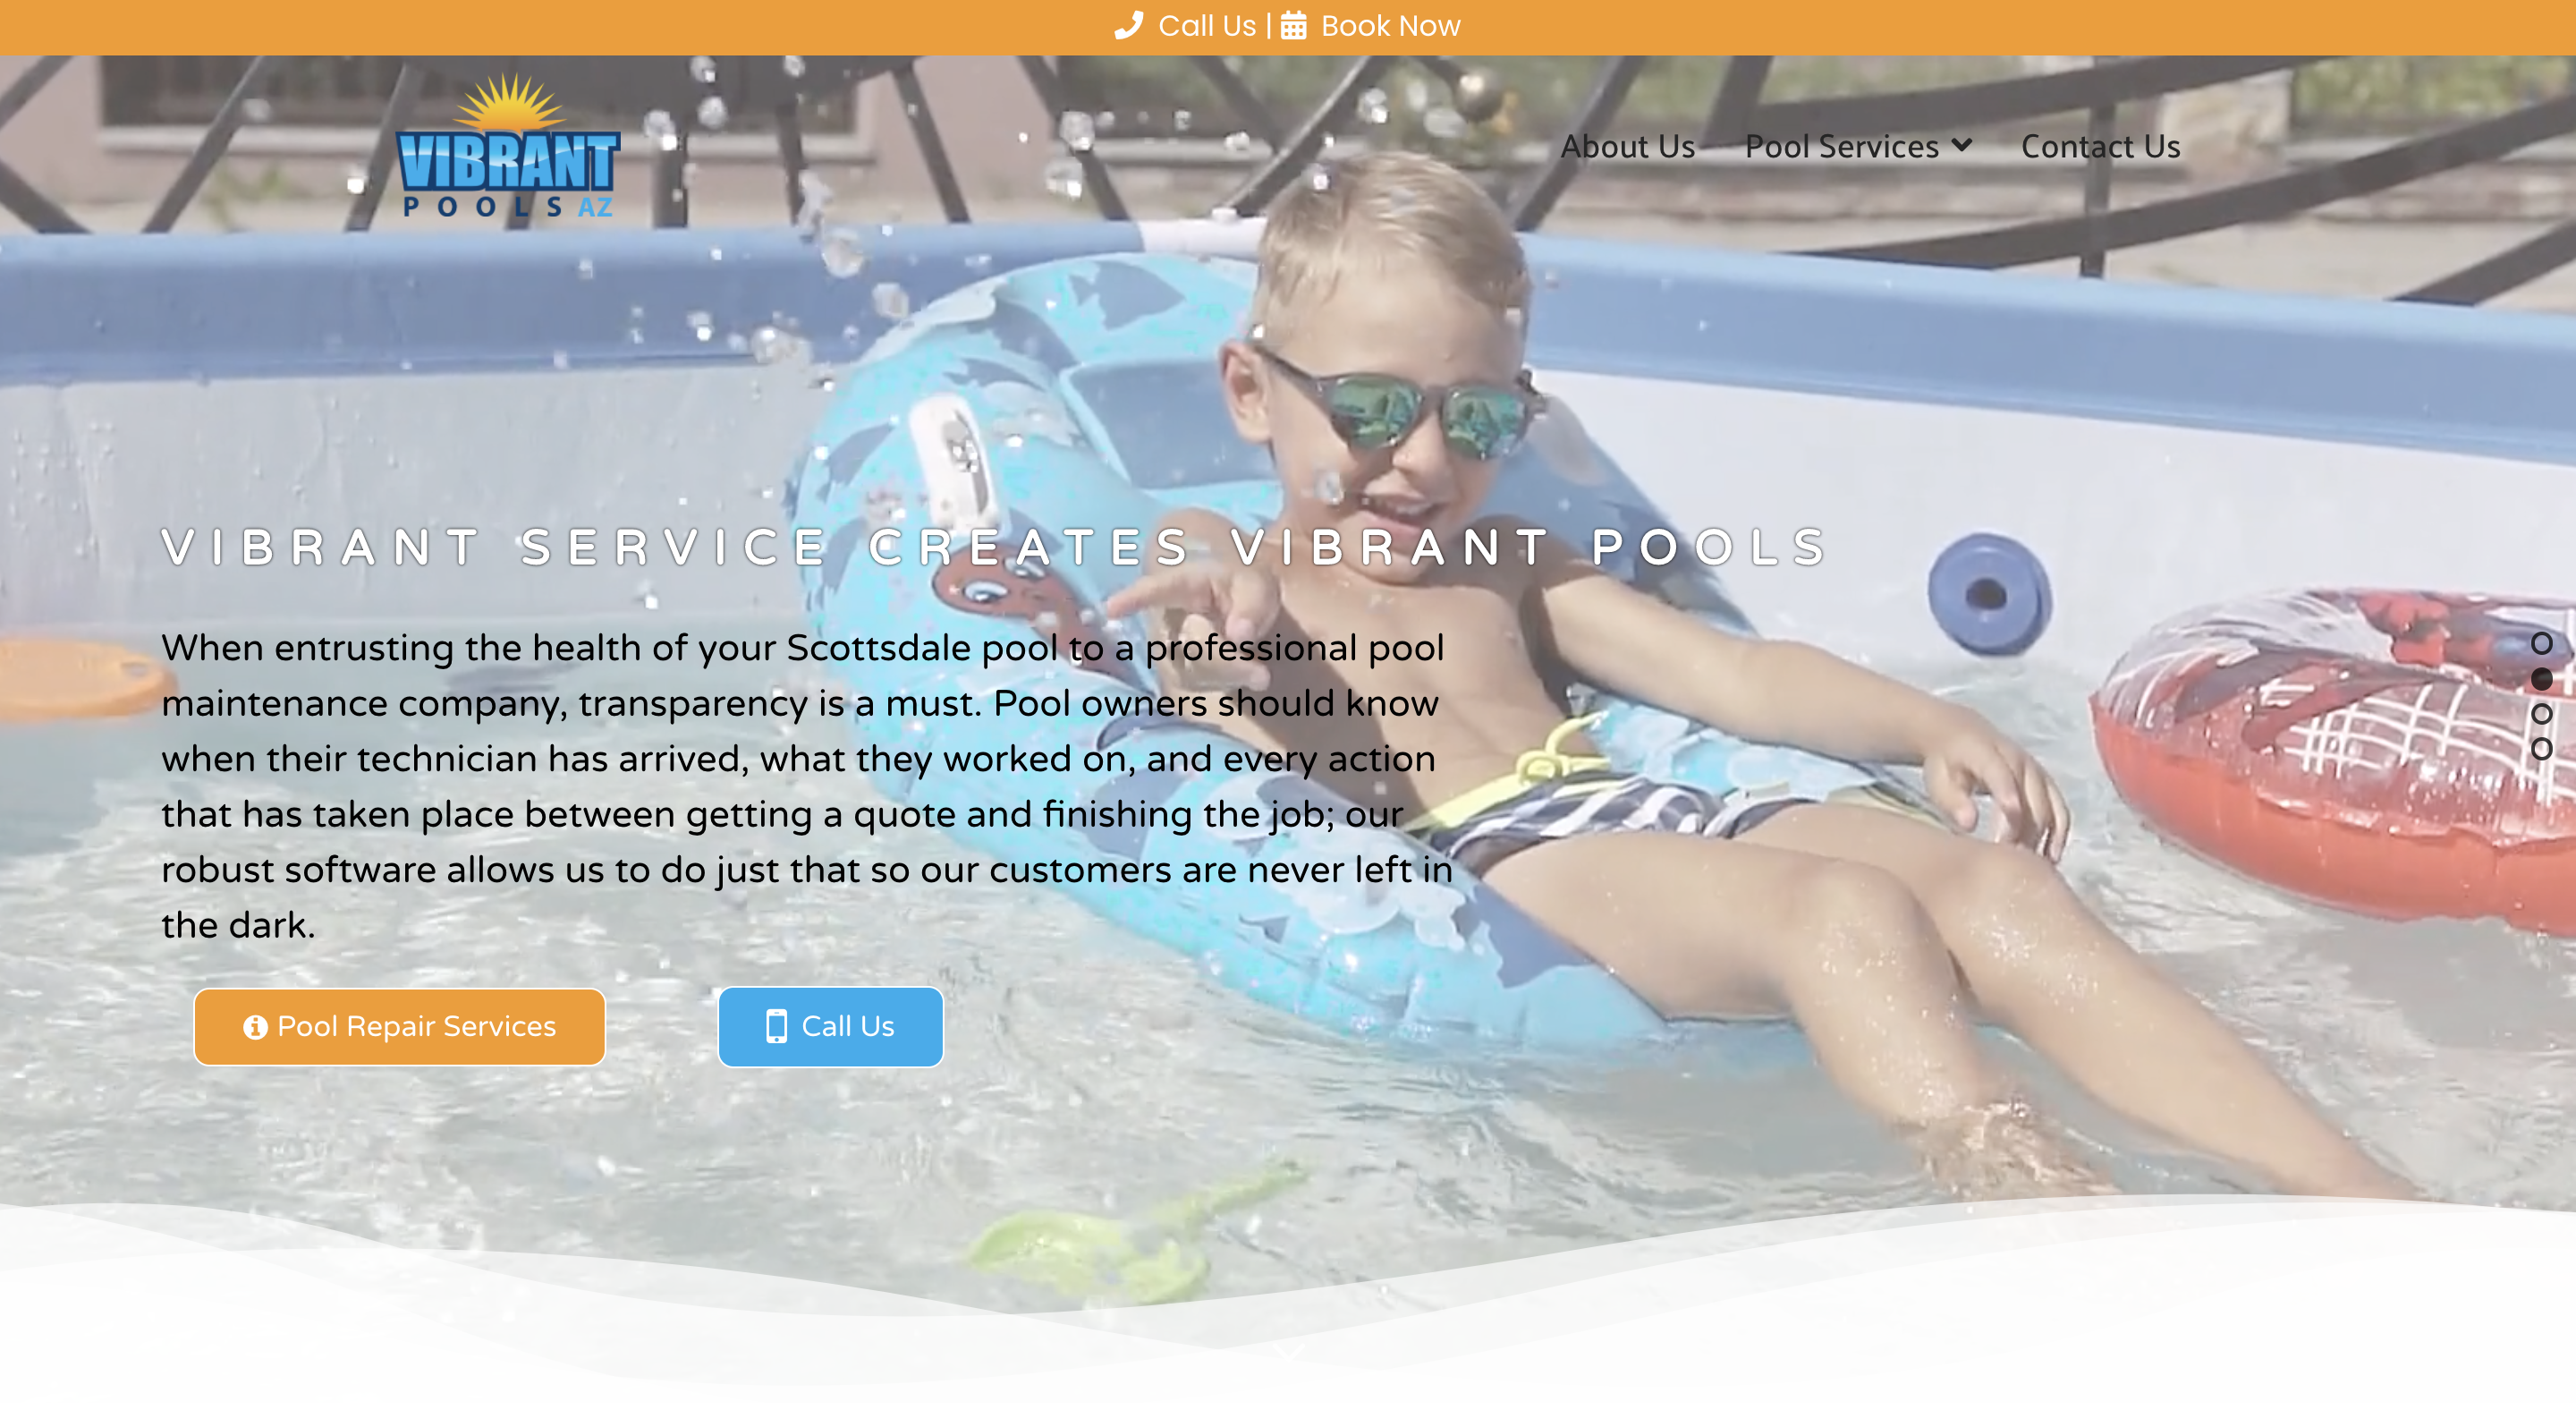 Scottsdale Vibrant Pool Service Homepage Slide 2